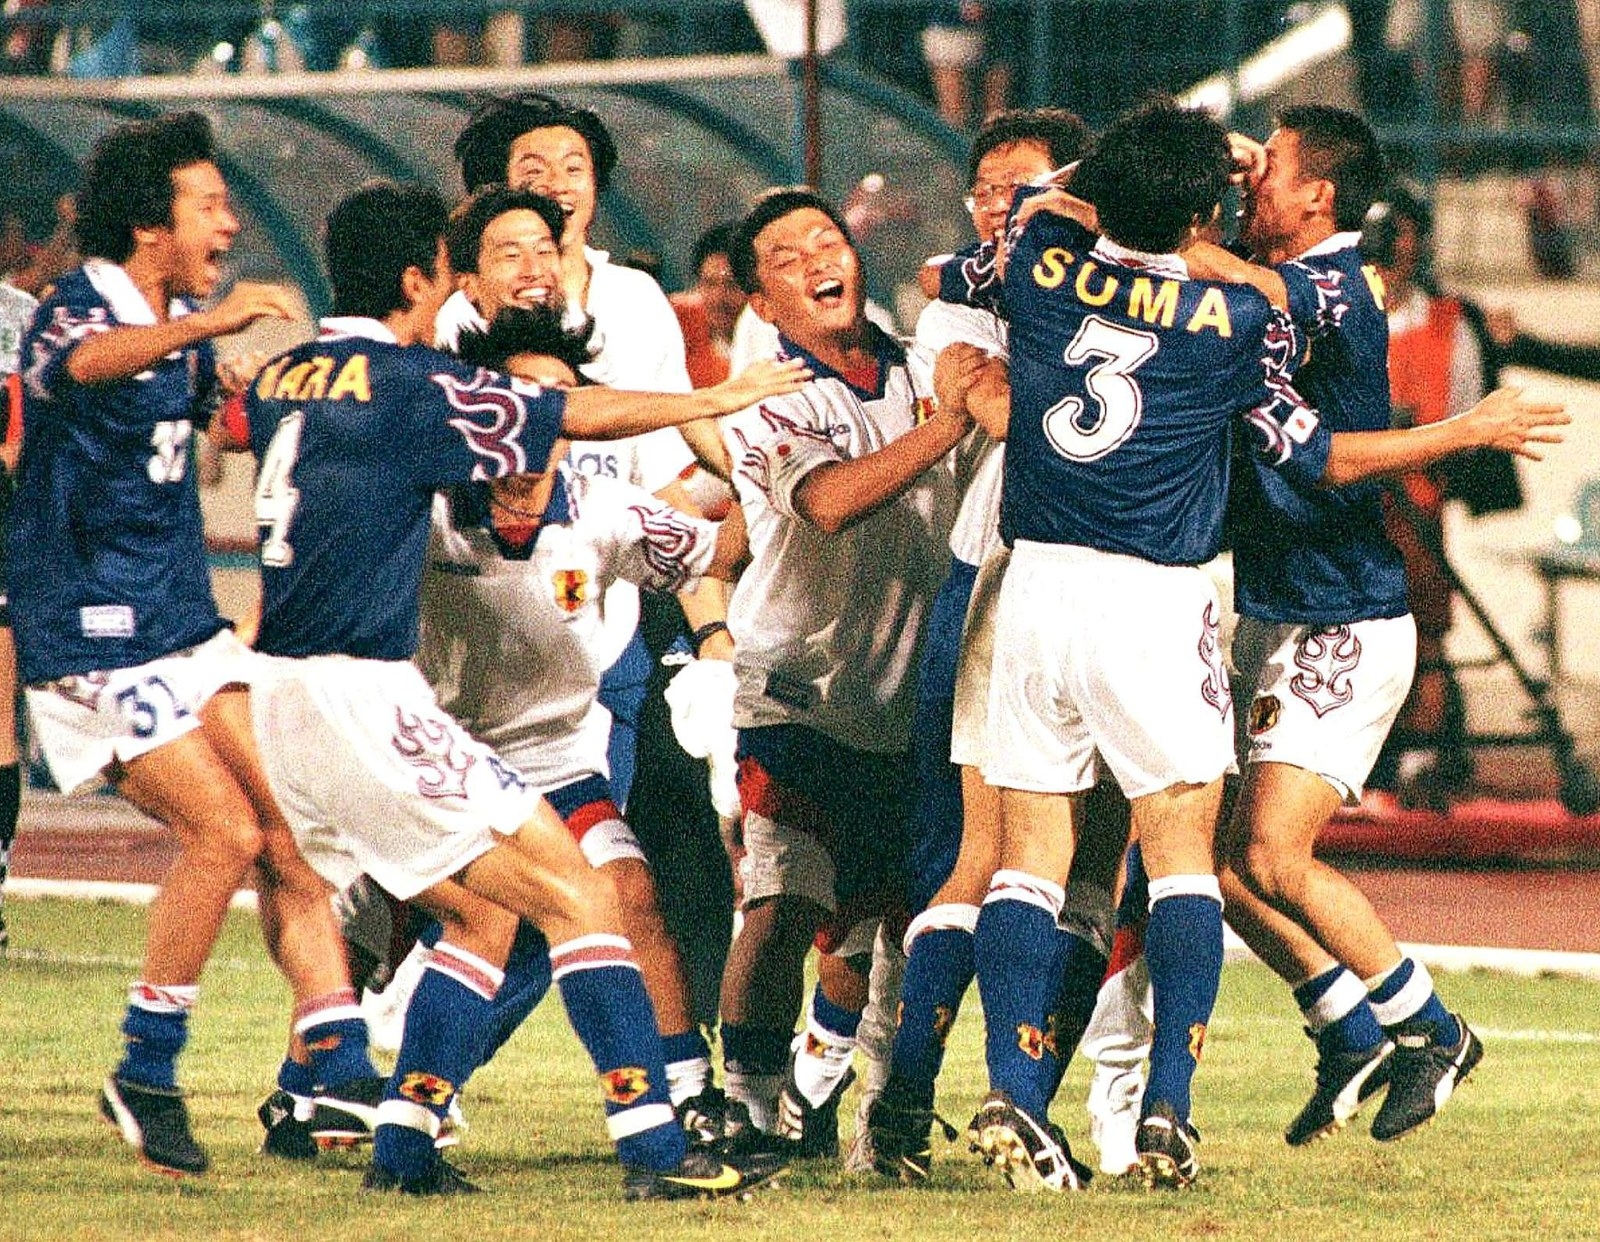 Jリーグ発足 ドーハ ジョホールバル なでしこw杯優勝 弱小からアジア最強へ 平成の日本サッカー史は高度成長の歴史だった